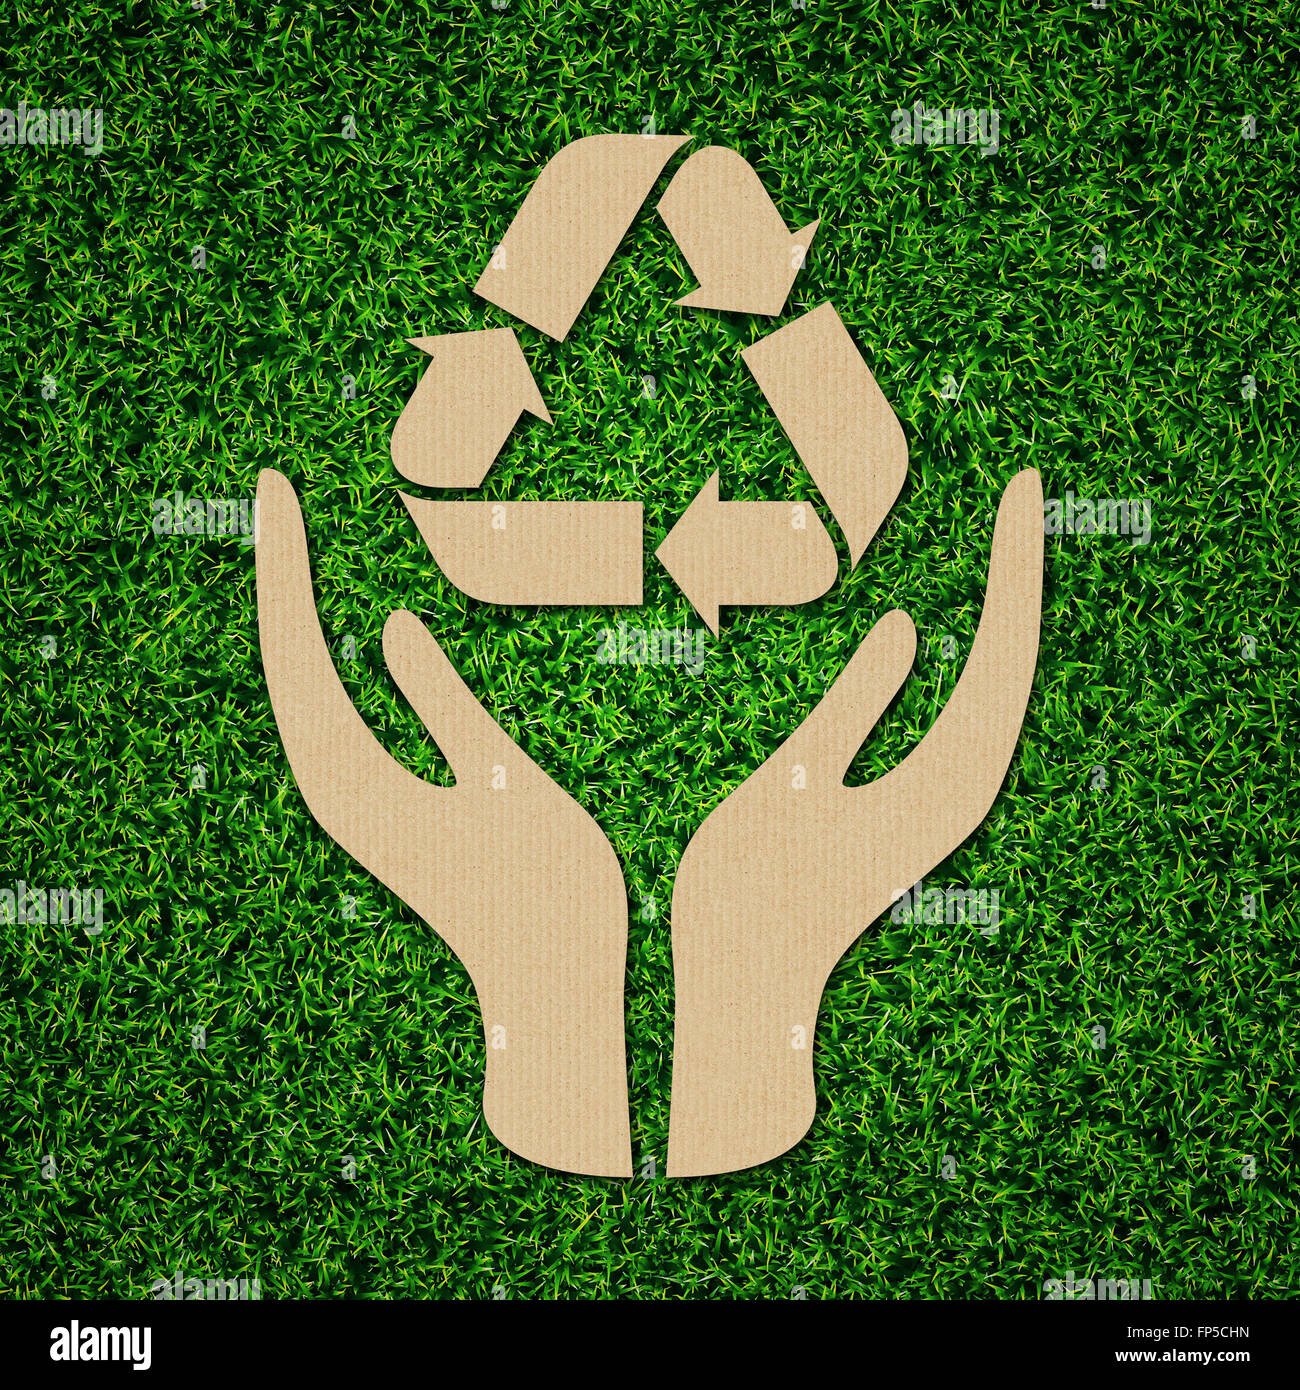 Riciclare, ridurre, riutilizzare simbolo icona su erba verde. Foto Stock